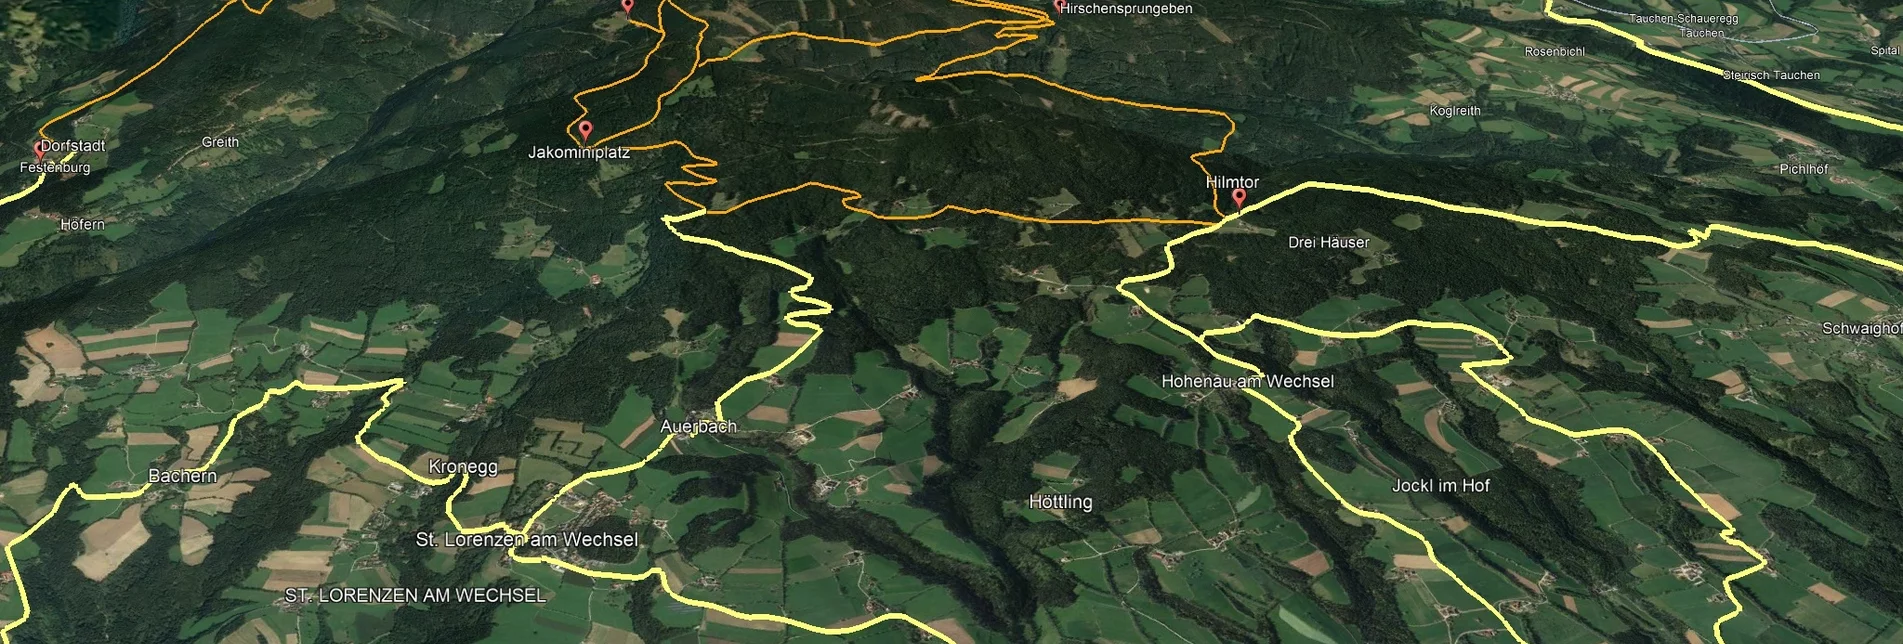 Mountain Biking PREVIEW Styrian Wexl Trails - feeder Pinggau via Friedberg to Hilmtor - Touren-Impression #1 | © Verein Tourismusentwicklung Steirischer Wechsel